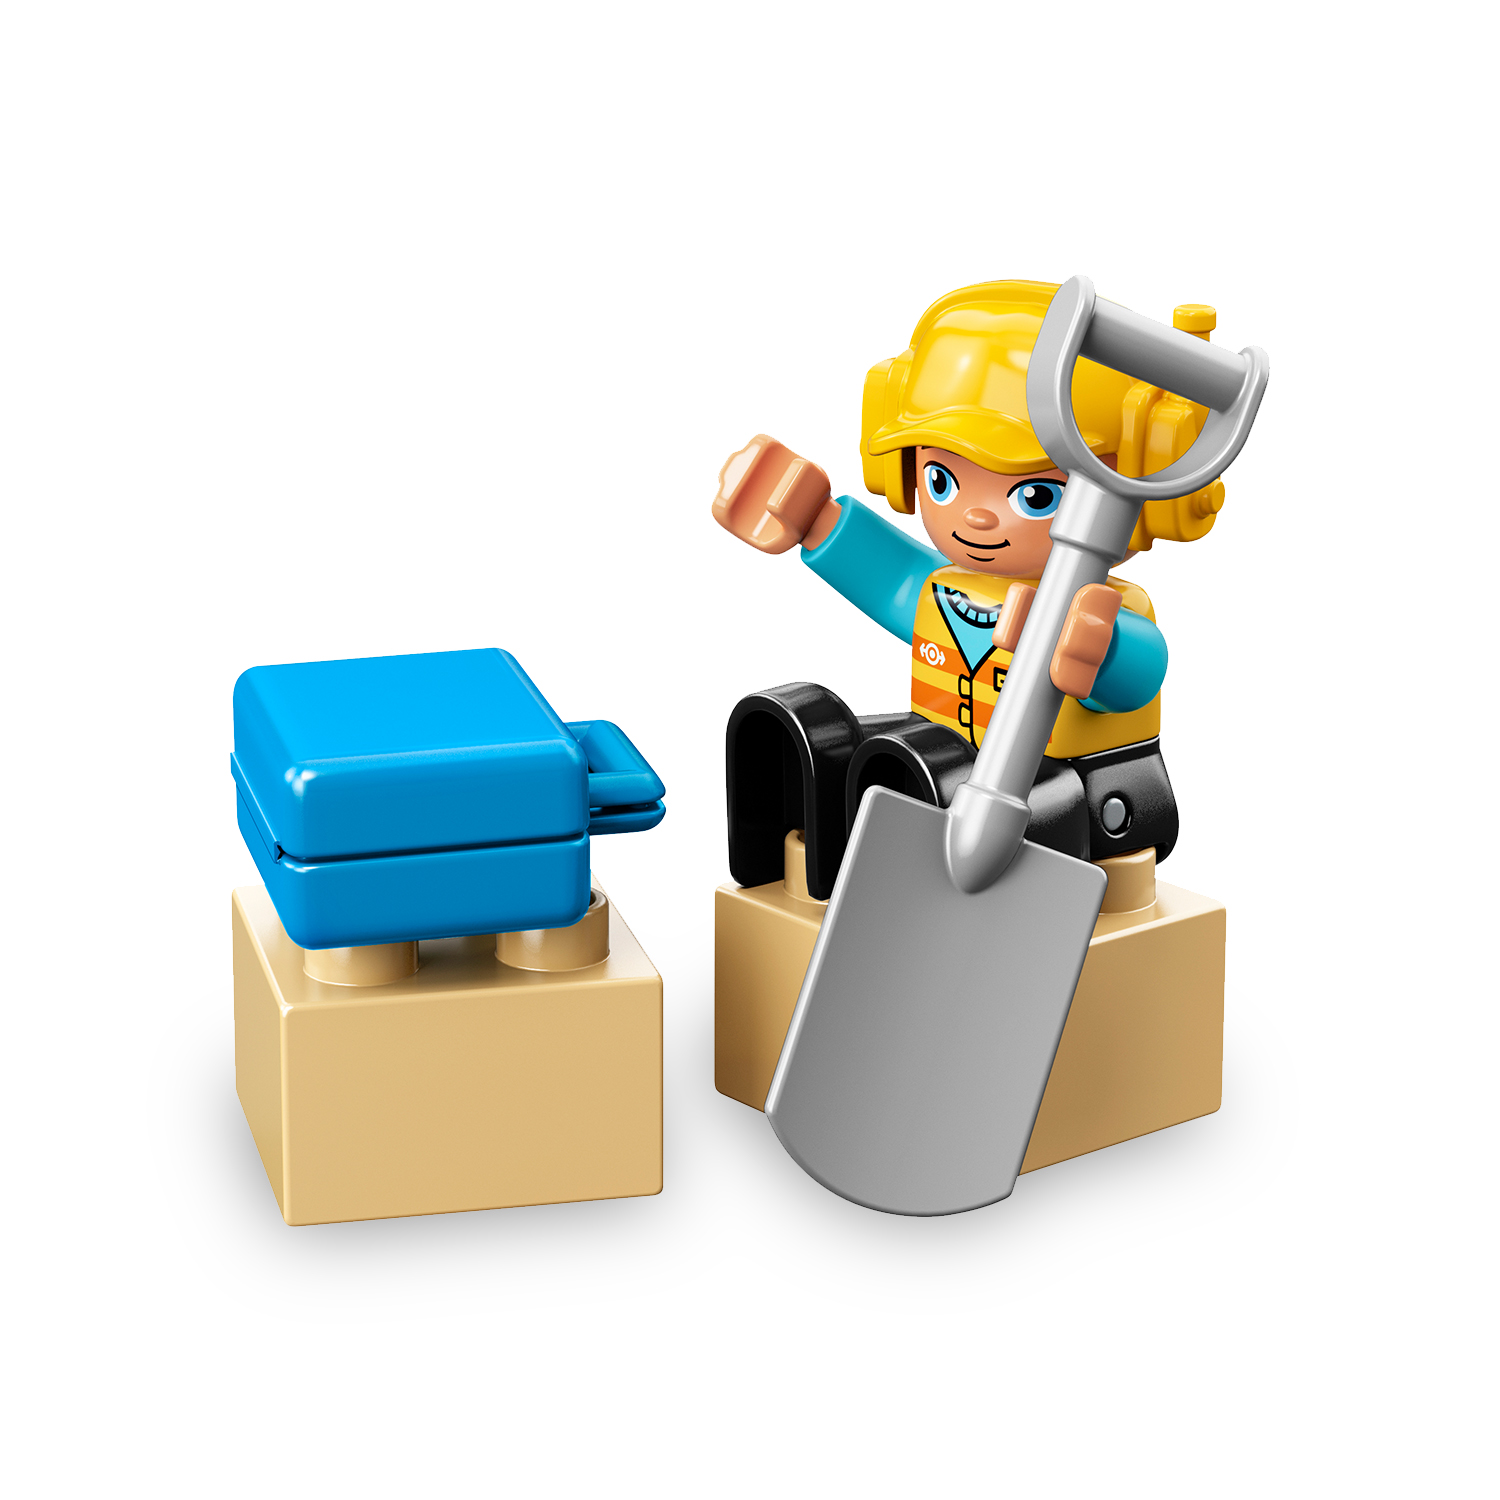 Lego duplo 10872 ponte e binari ferroviari, giochi per bambini in età prescolare con mattoncino sonoro, giocattoli educativi - LEGO DUPLO, Lego